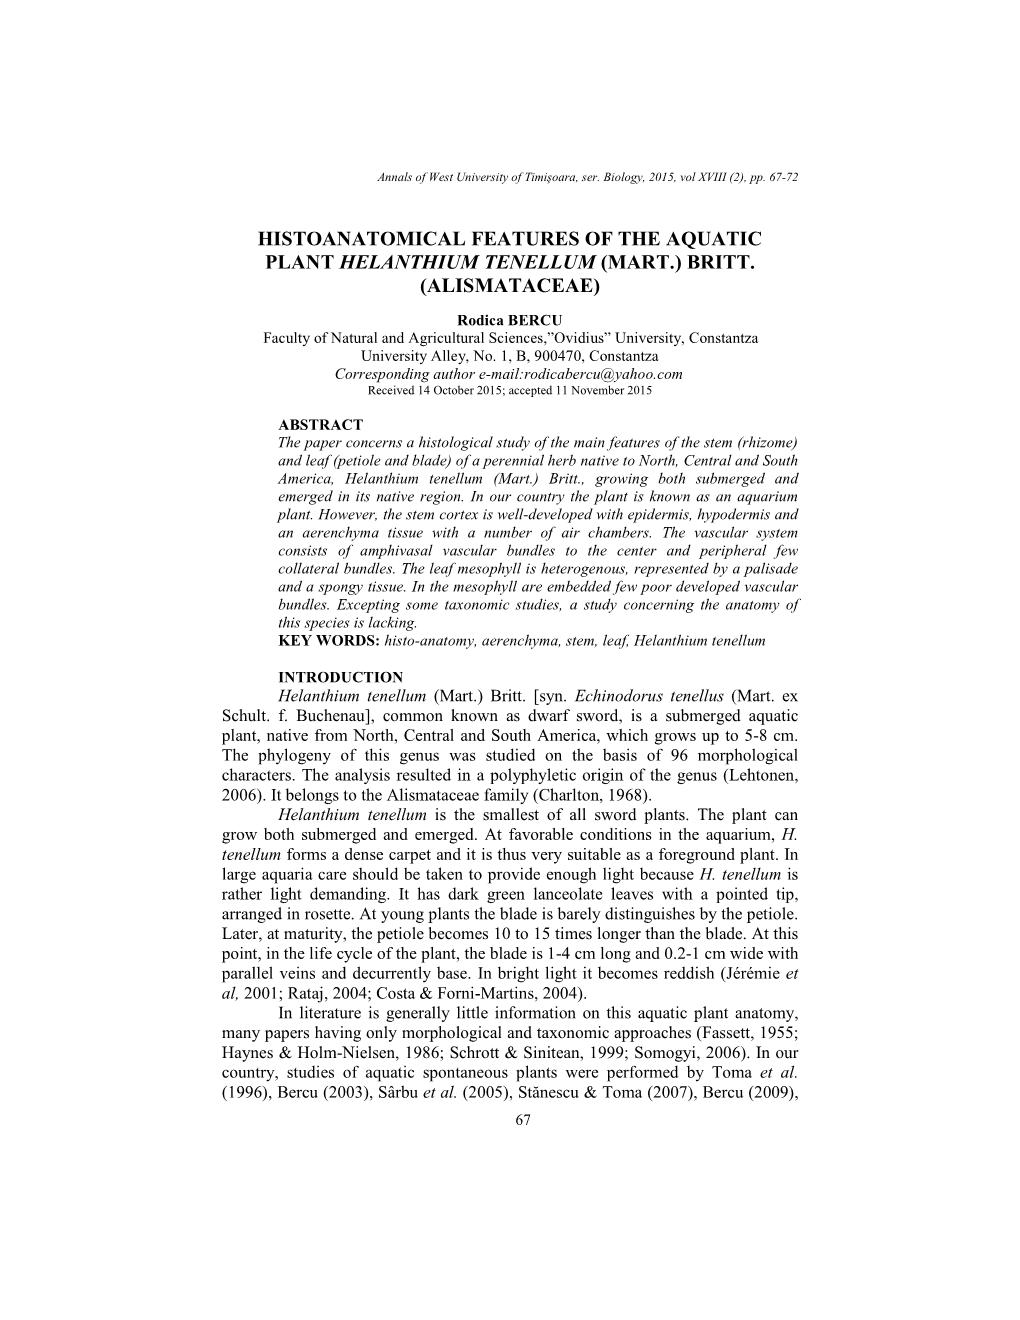 Histoanatomical Features of the Aquatic Plant Helanthium Tenellum (Mart.) Britt